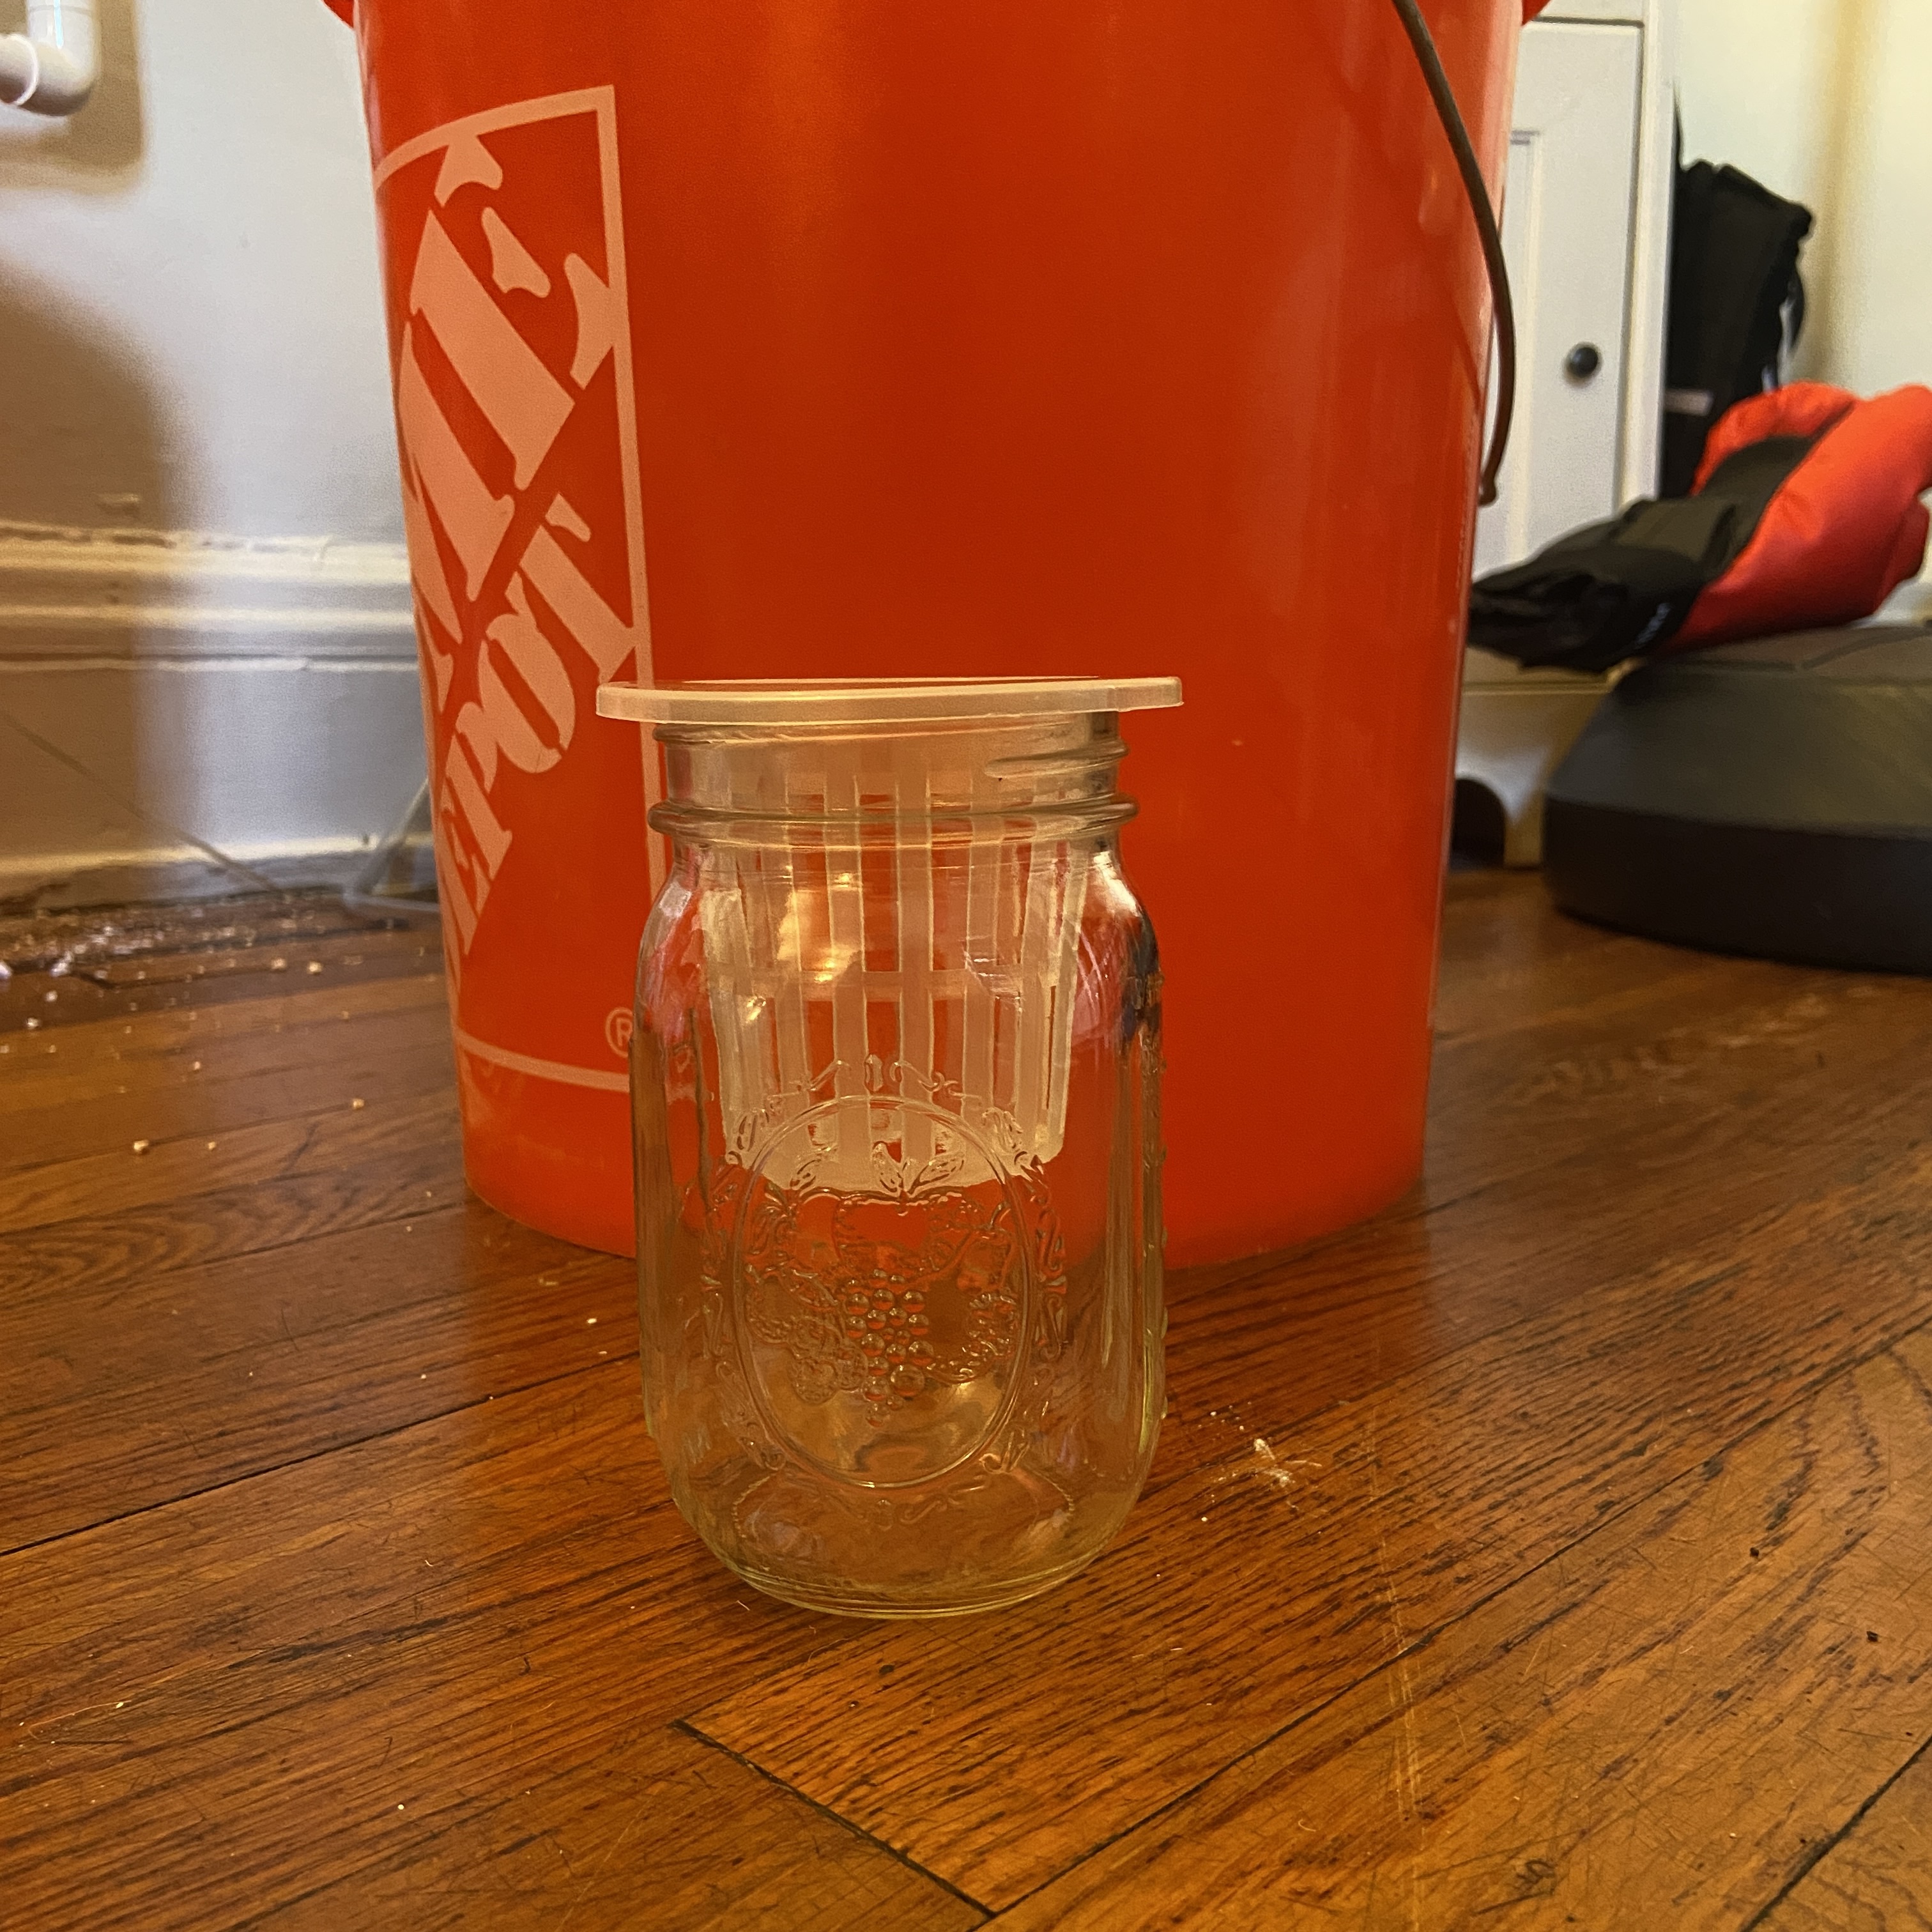 Net cup in mason jar